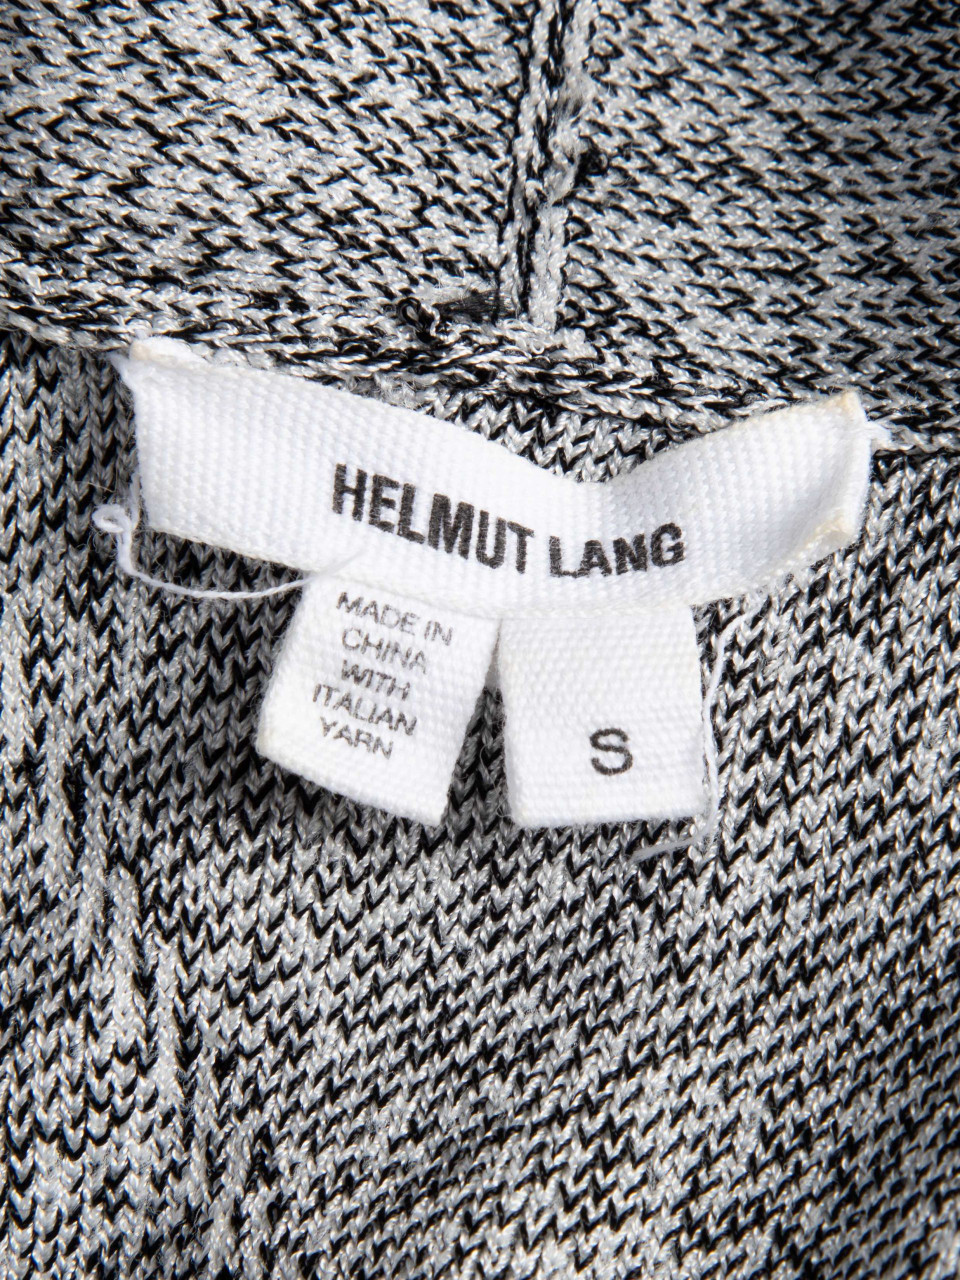 Helmut Lang Black and White V-Neck Sweater